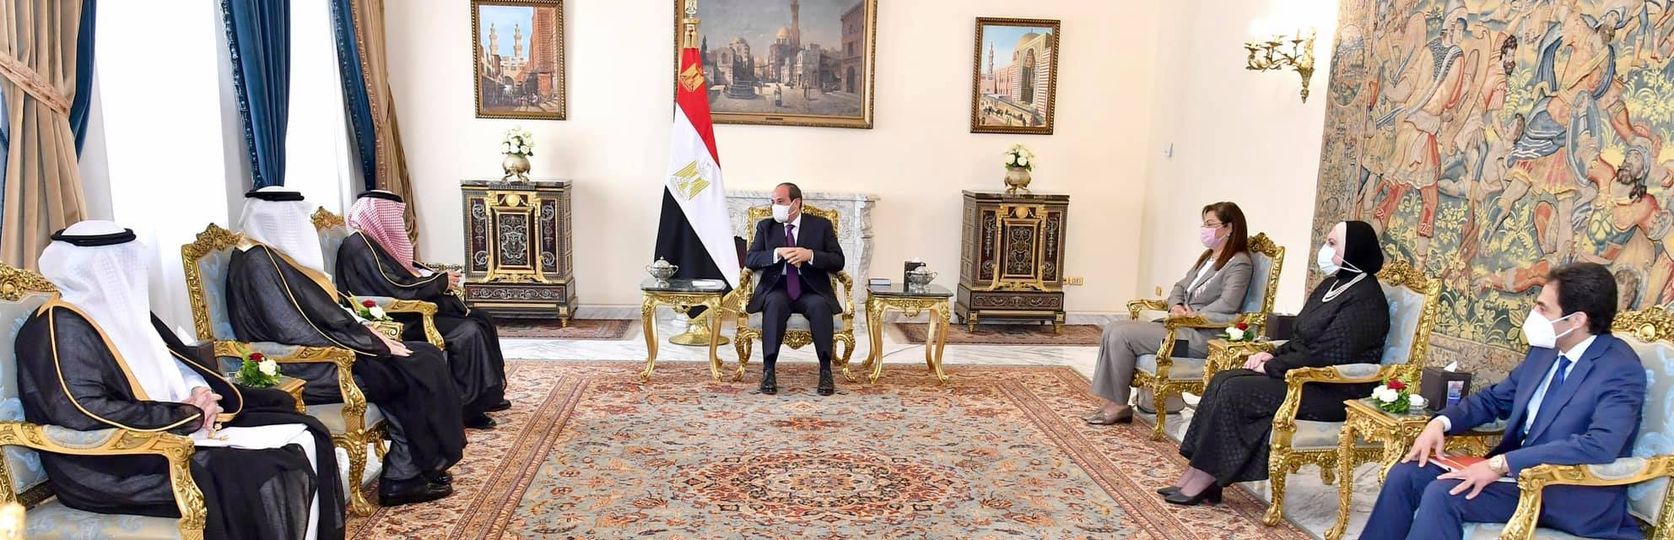 السيد الرئيس يؤكد علي موقف مصر الثابت من دعم أمن واستقرار السعودية الذي يعتبر جزء من أمن مصر القومي